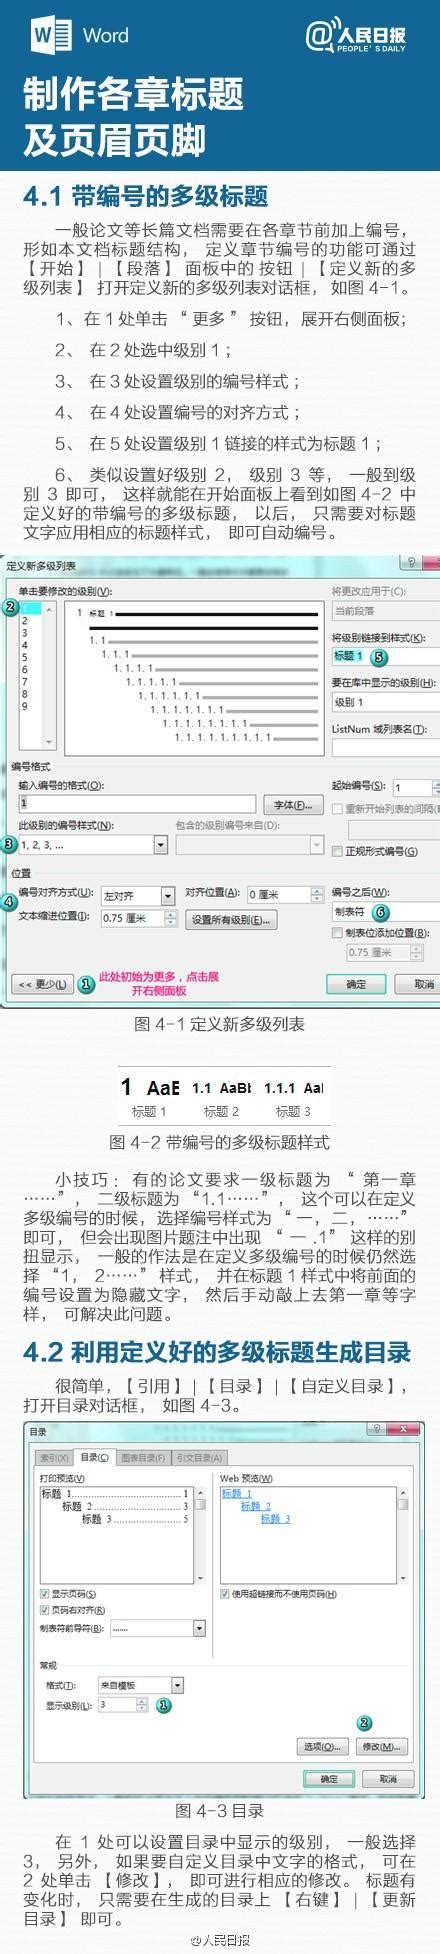 上海师范大学研究生毕业论文 LaTeX 模板 (新版) - LaTeX 工作室